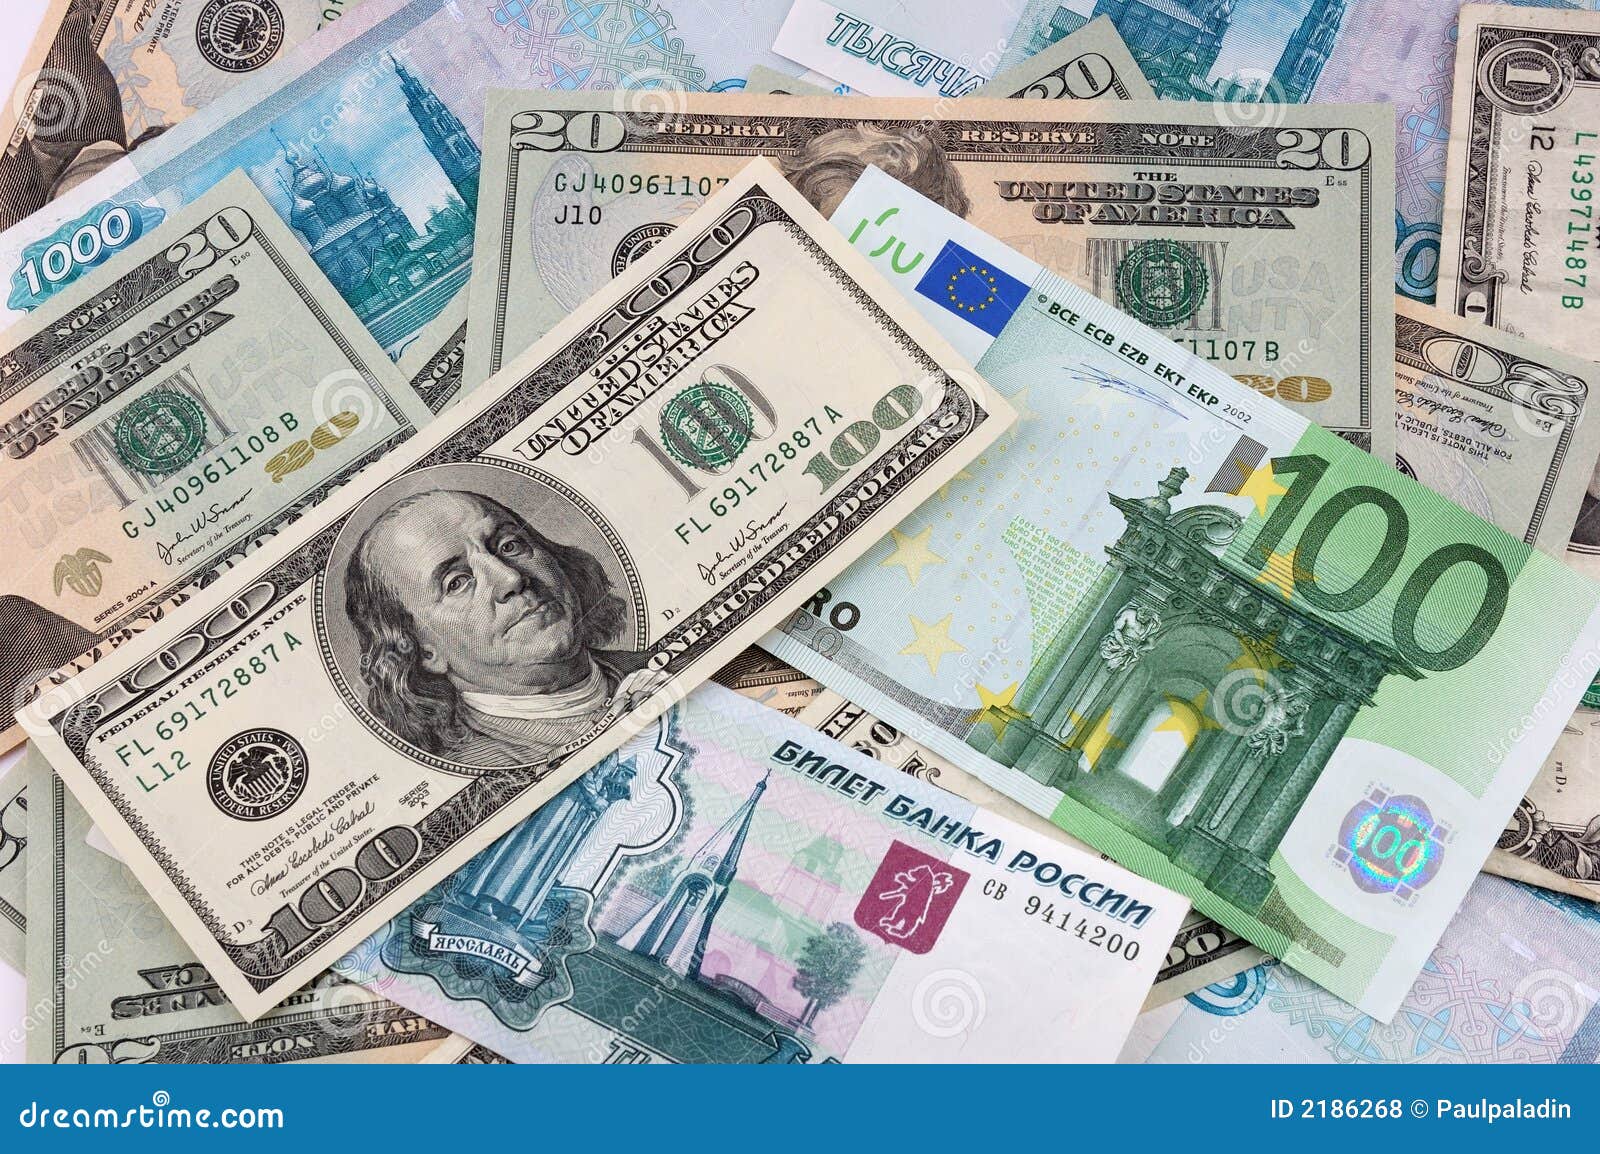 Доллар евро в краснодаре. Доллар и евро. Доллар и евро рисунок. Купюры евро и доллара. Купюры евро доллары рубли.